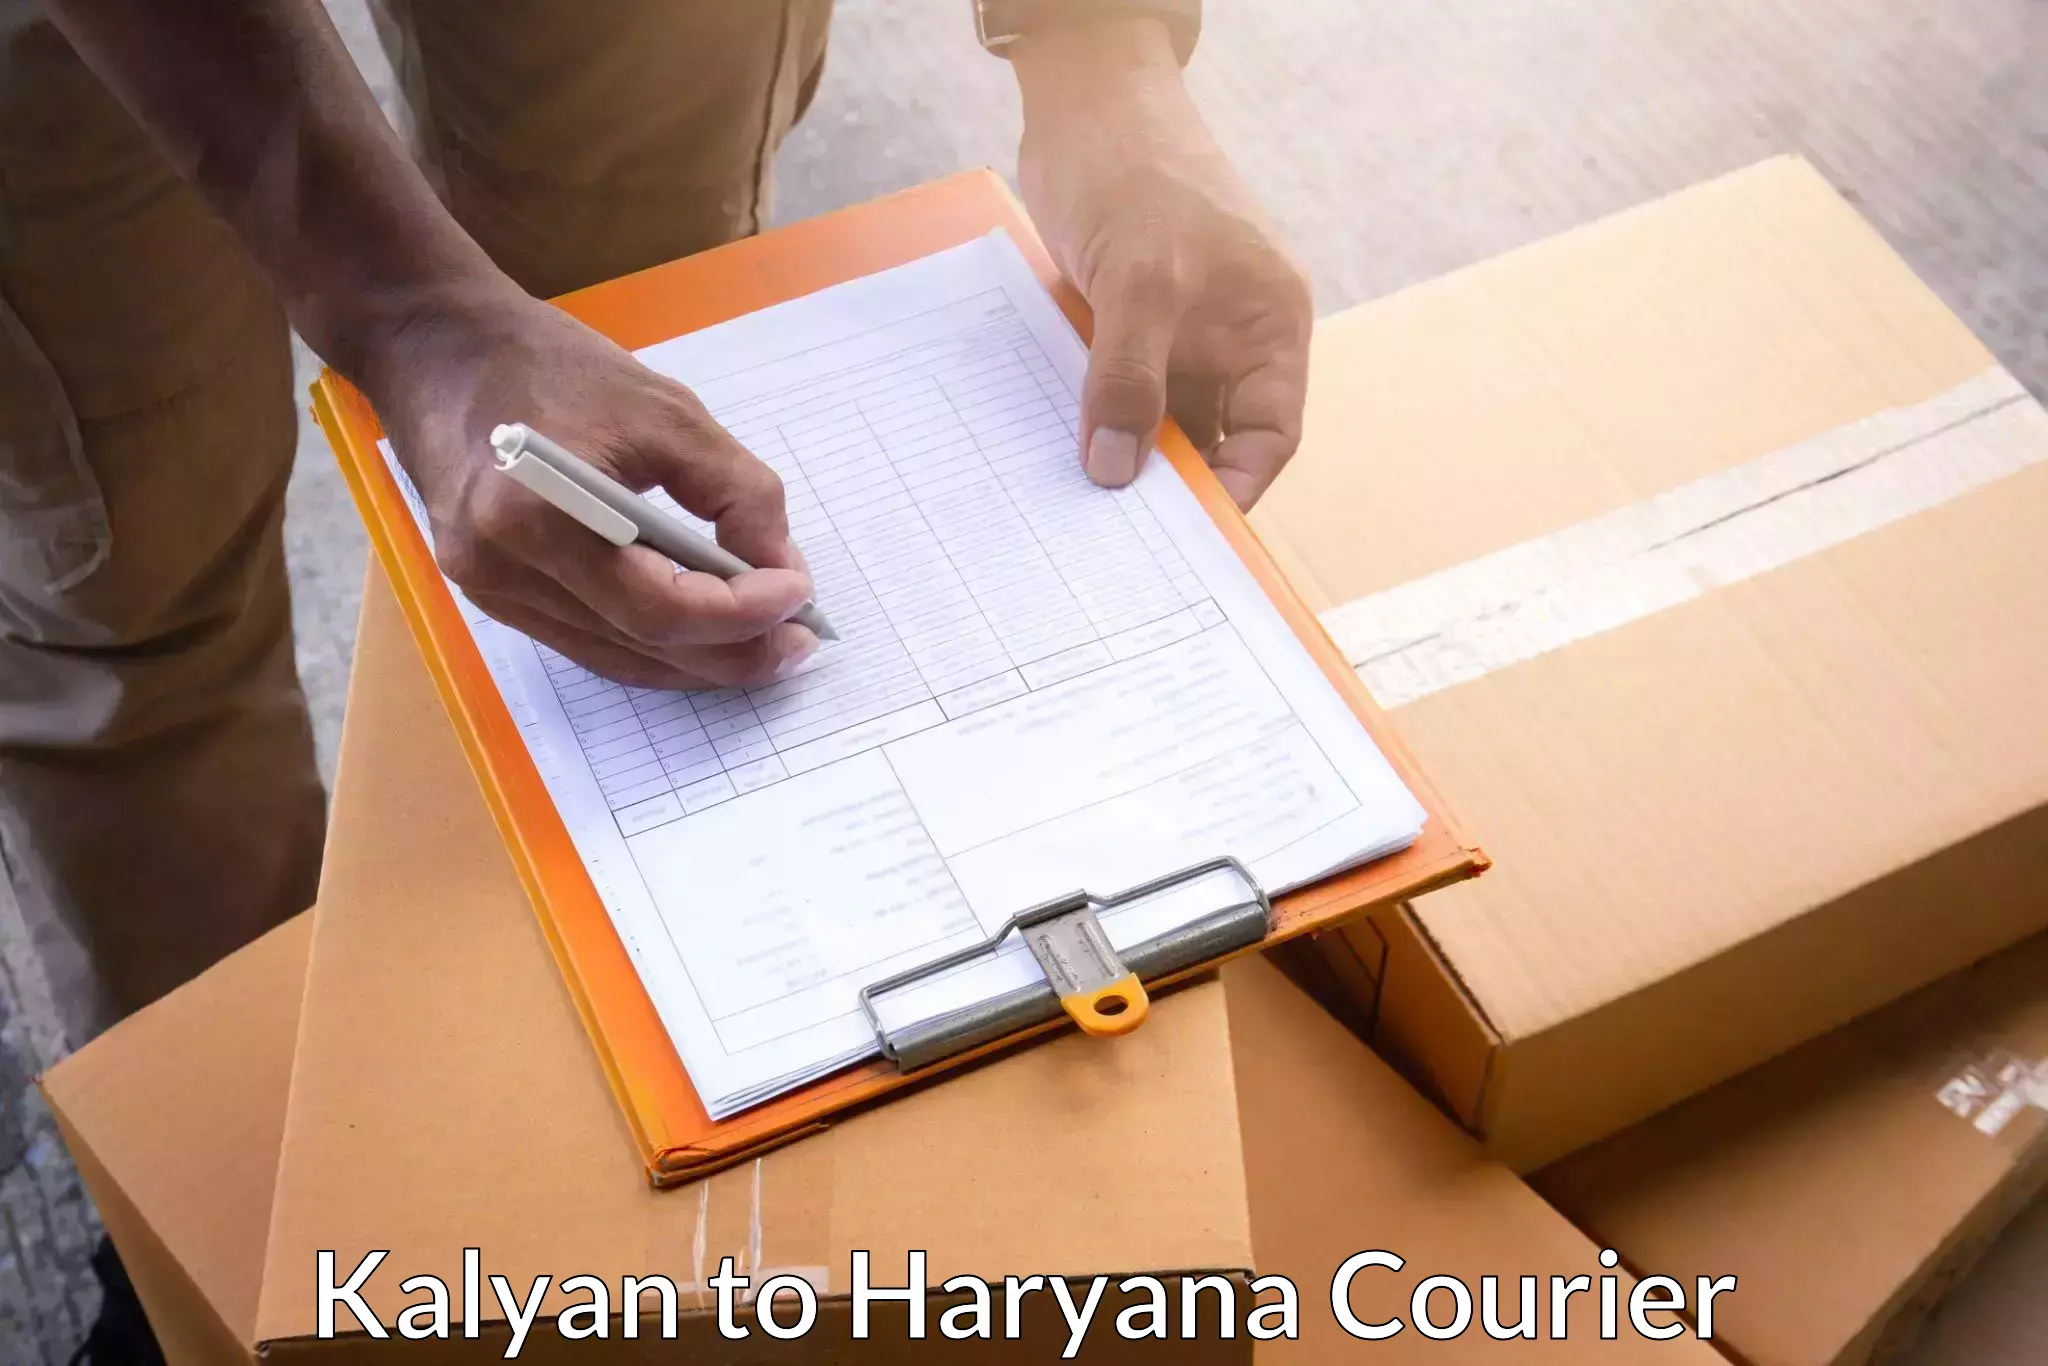 Advanced shipping network Kalyan to Hansi